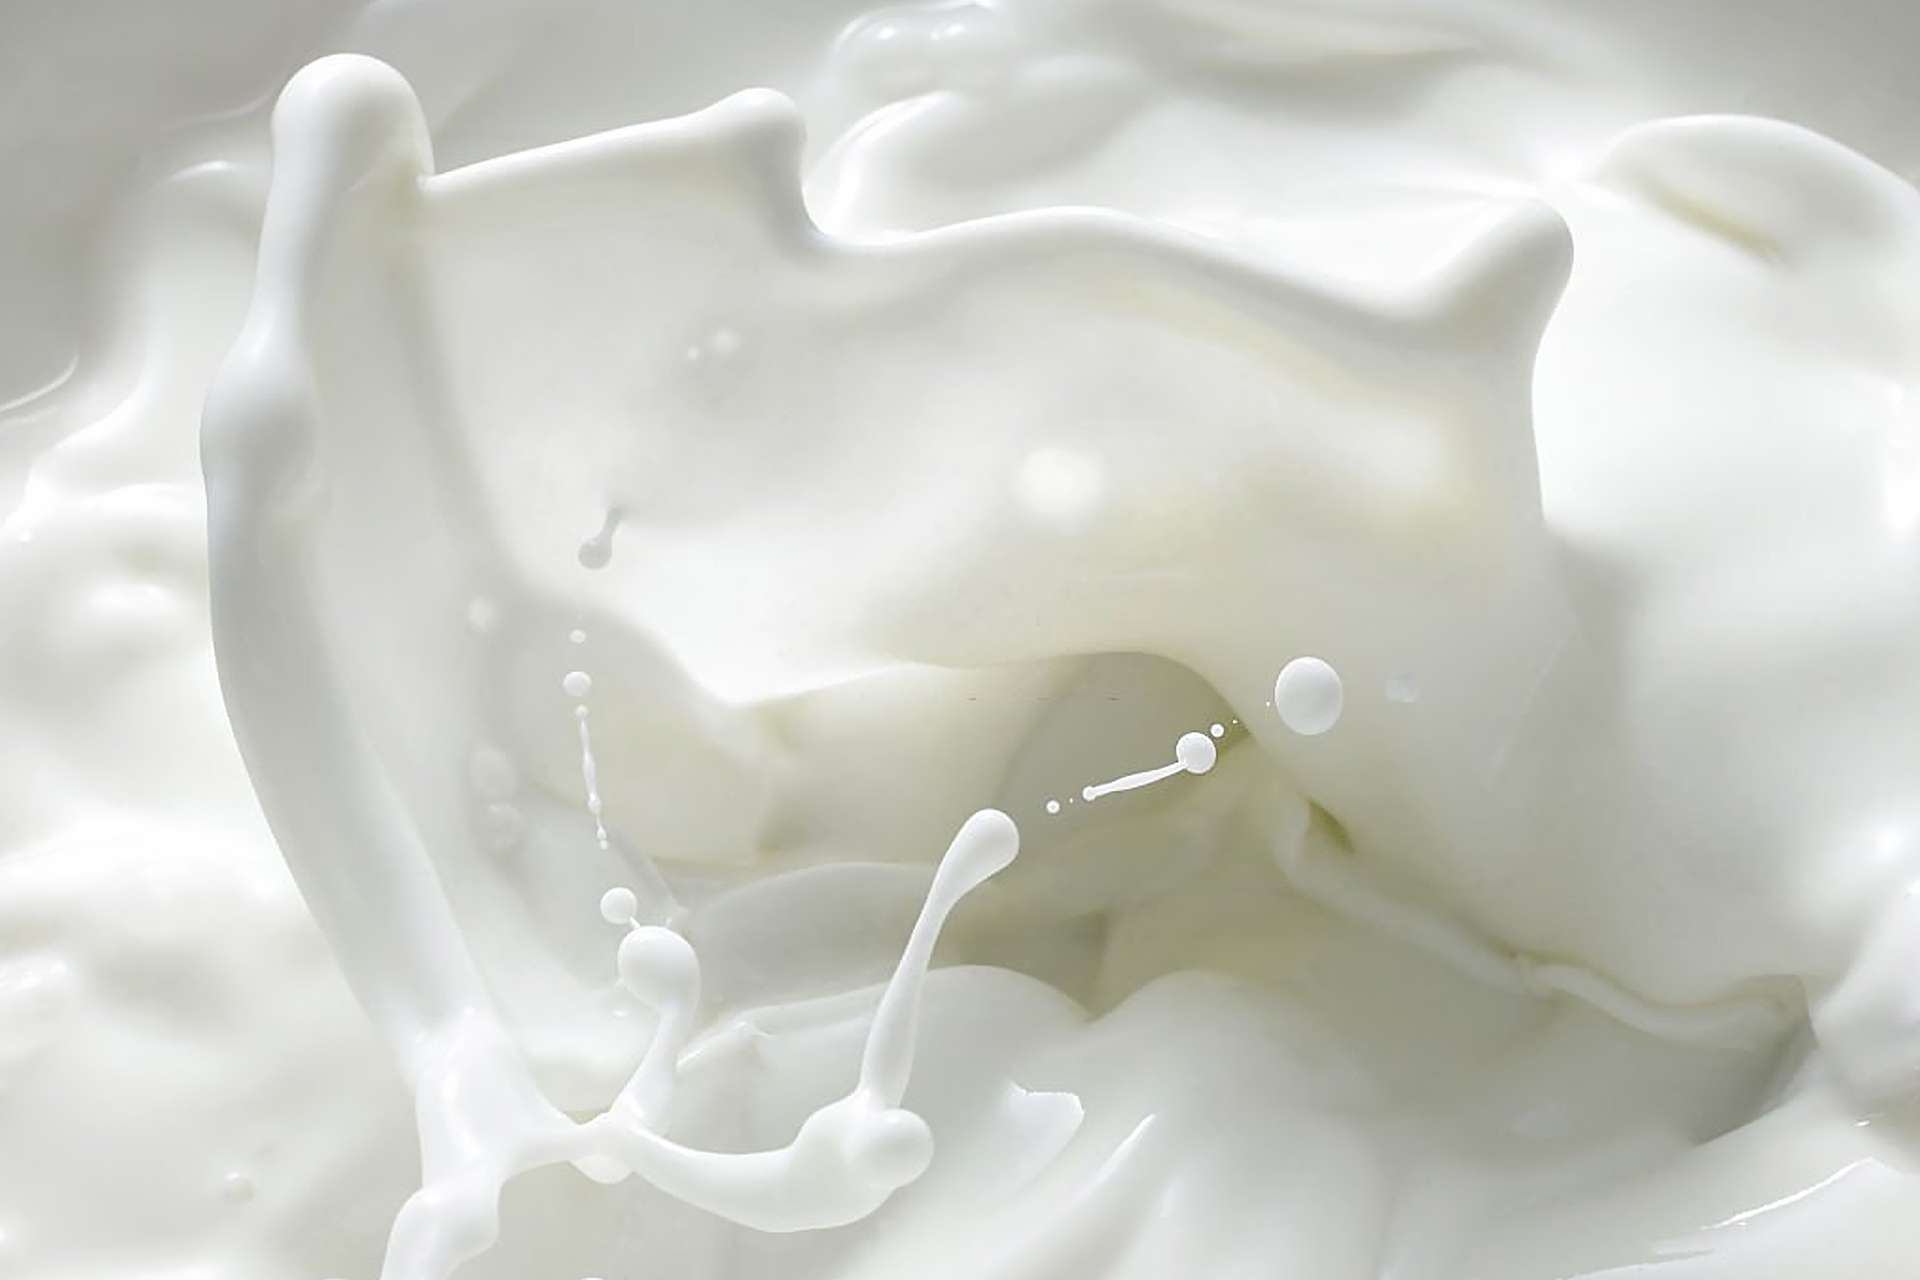 Il latte è una bevanda che causa aumento di peso e altre problematiche